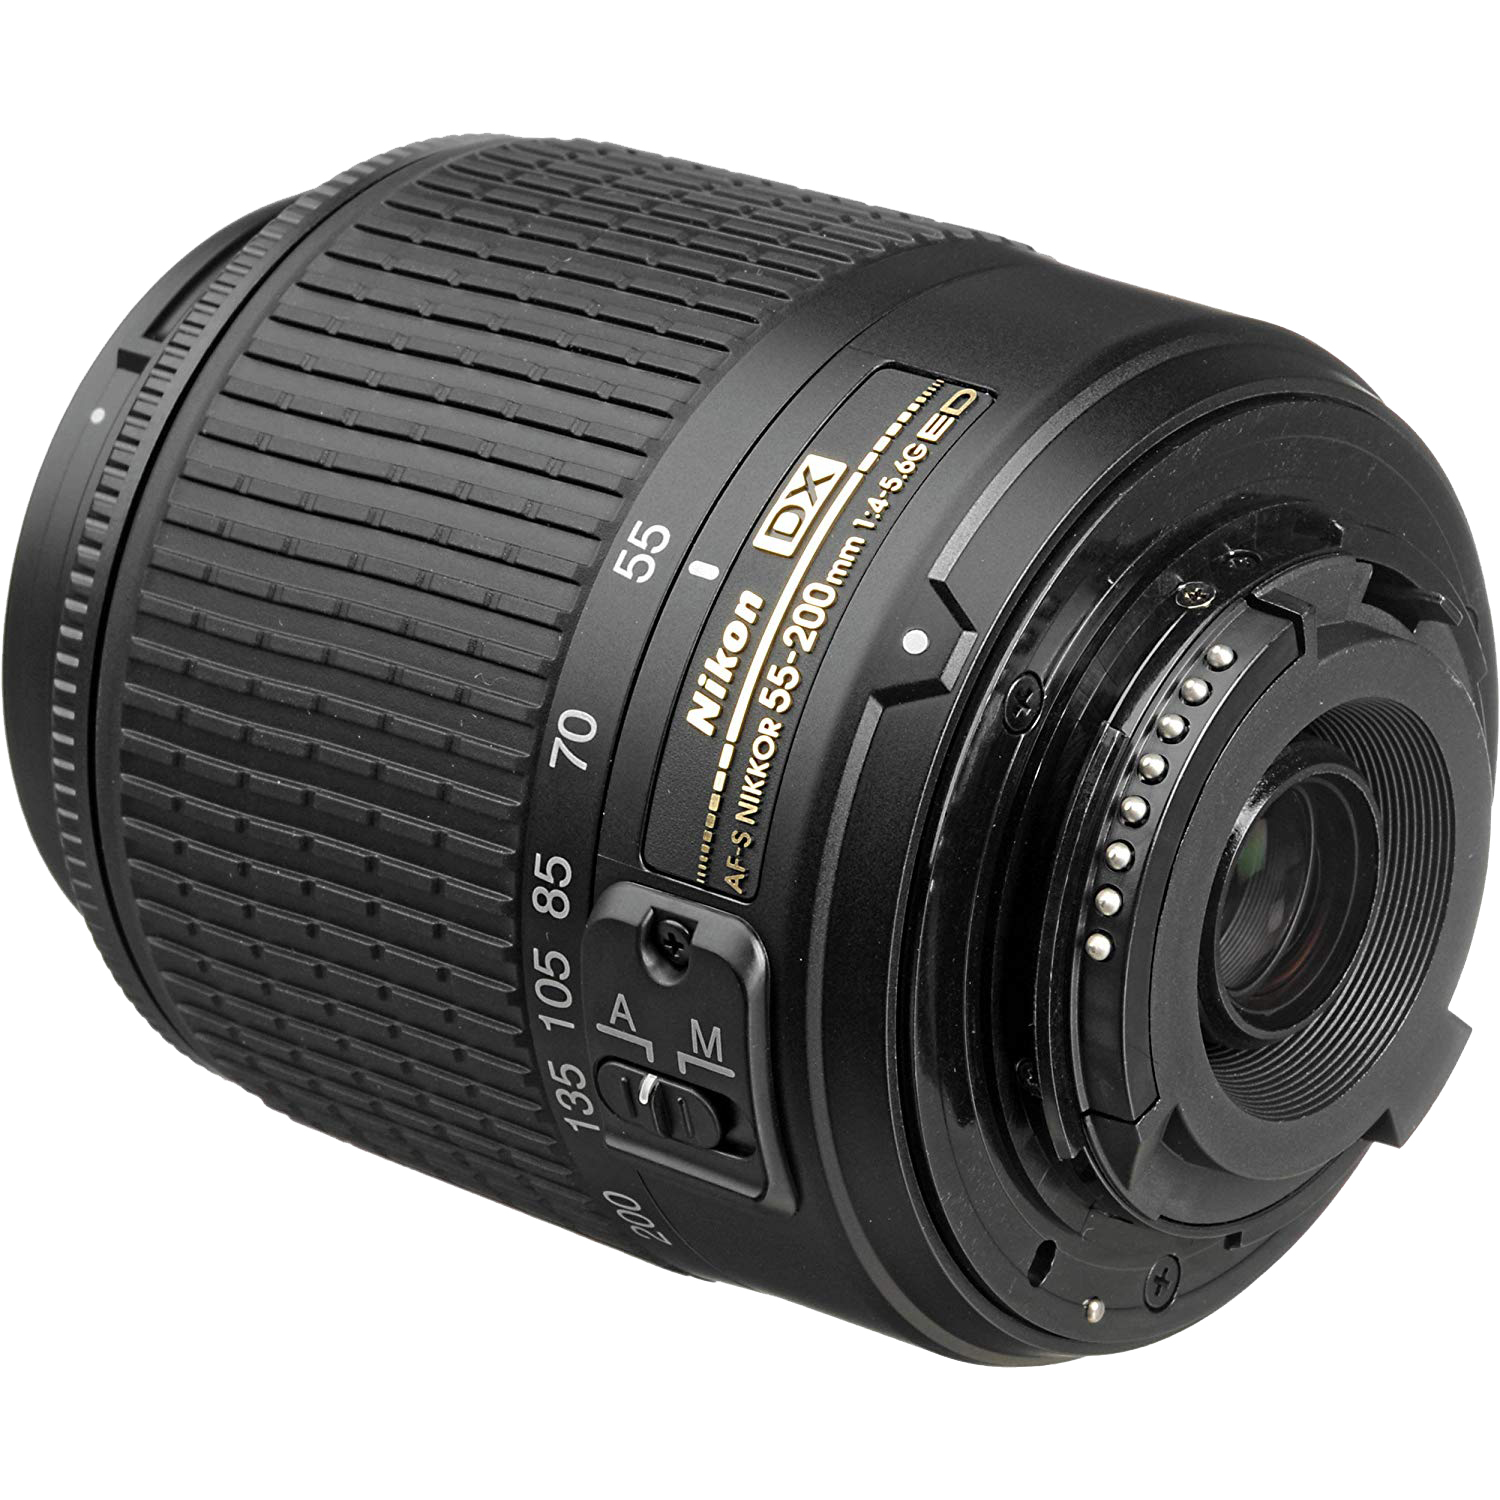 Nikon 55-200mm F/4-5.6G ED AF-S DX Zoom-Nikkor Lens | eBay